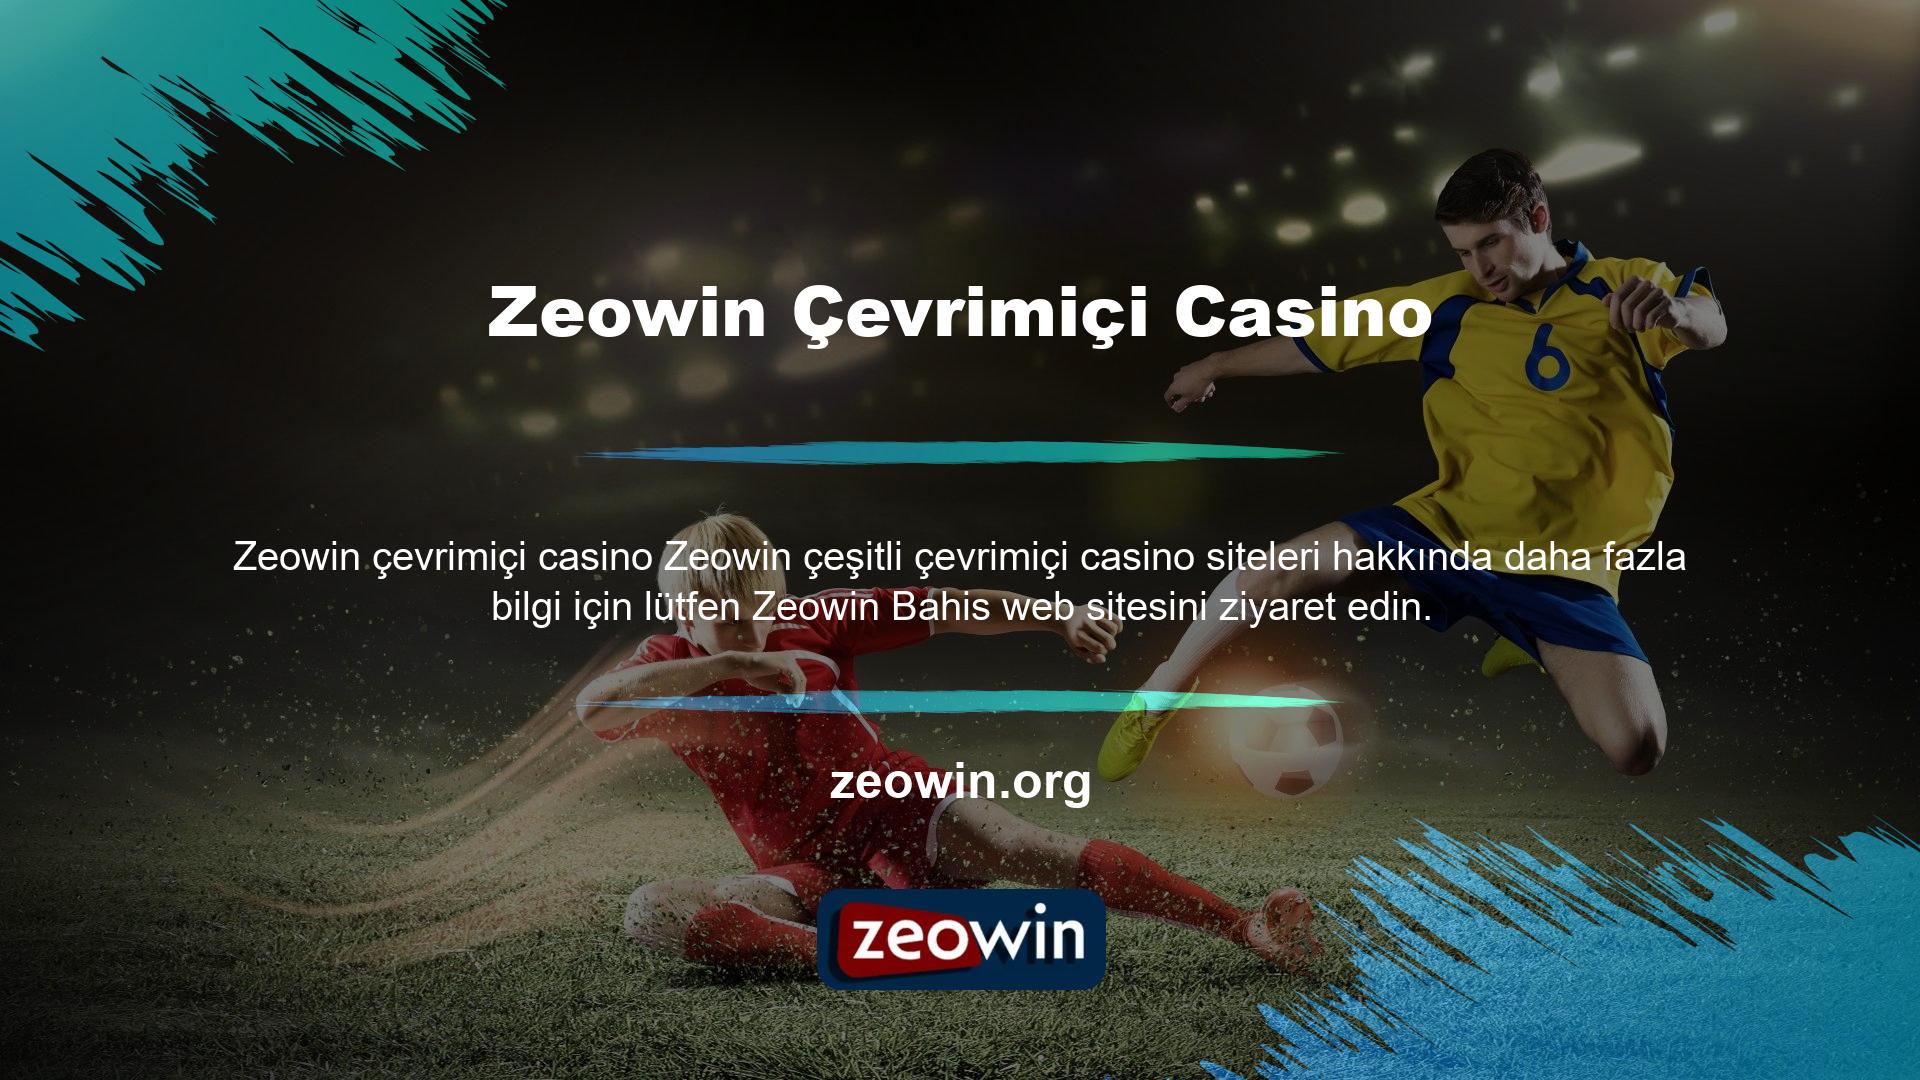 Üyelerimizden gelen sorulardan biri şuydu: "Bir web sitesi dosyaların silinmesini talep ettikten sonra Zeowin dosyalarını göndermek güvenli midir?" Türk casino siteleri güvenilir içerikli, yasal lisanslı hizmetler sunmaktadır